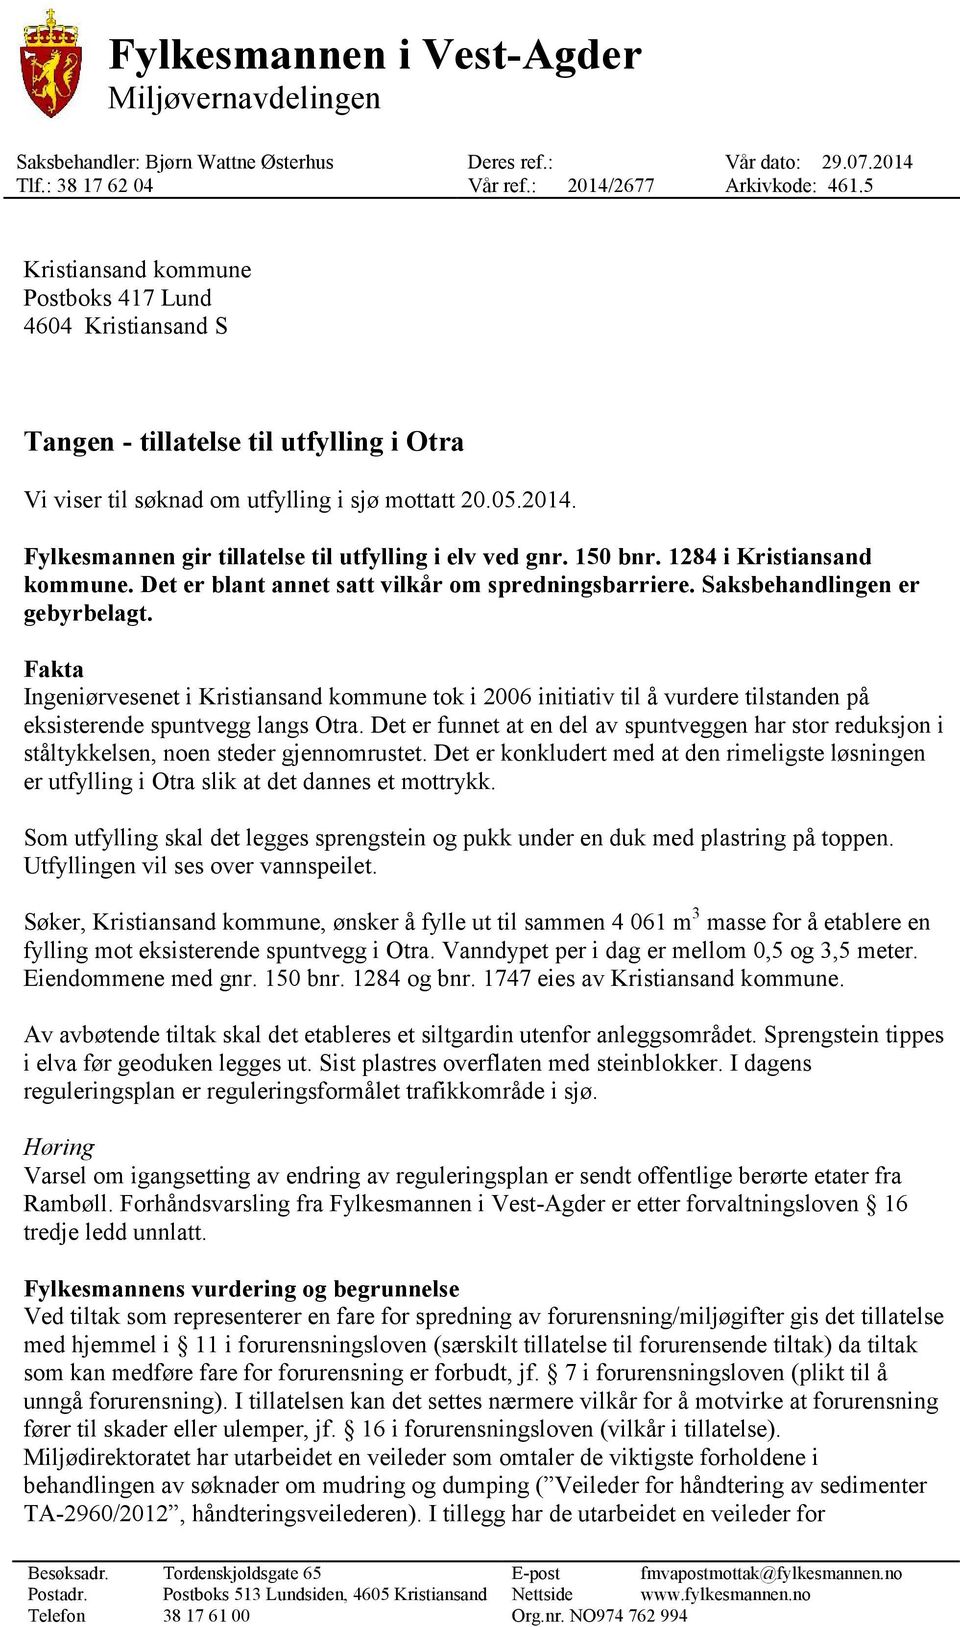 Fylkesmannen gir tillatelse til utfylling i elv ved gnr. 150 bnr. 1284 i Kristiansand kommune. Det er blant annet satt vilkår om spredningsbarriere. Saksbehandlingen er gebyrbelagt.